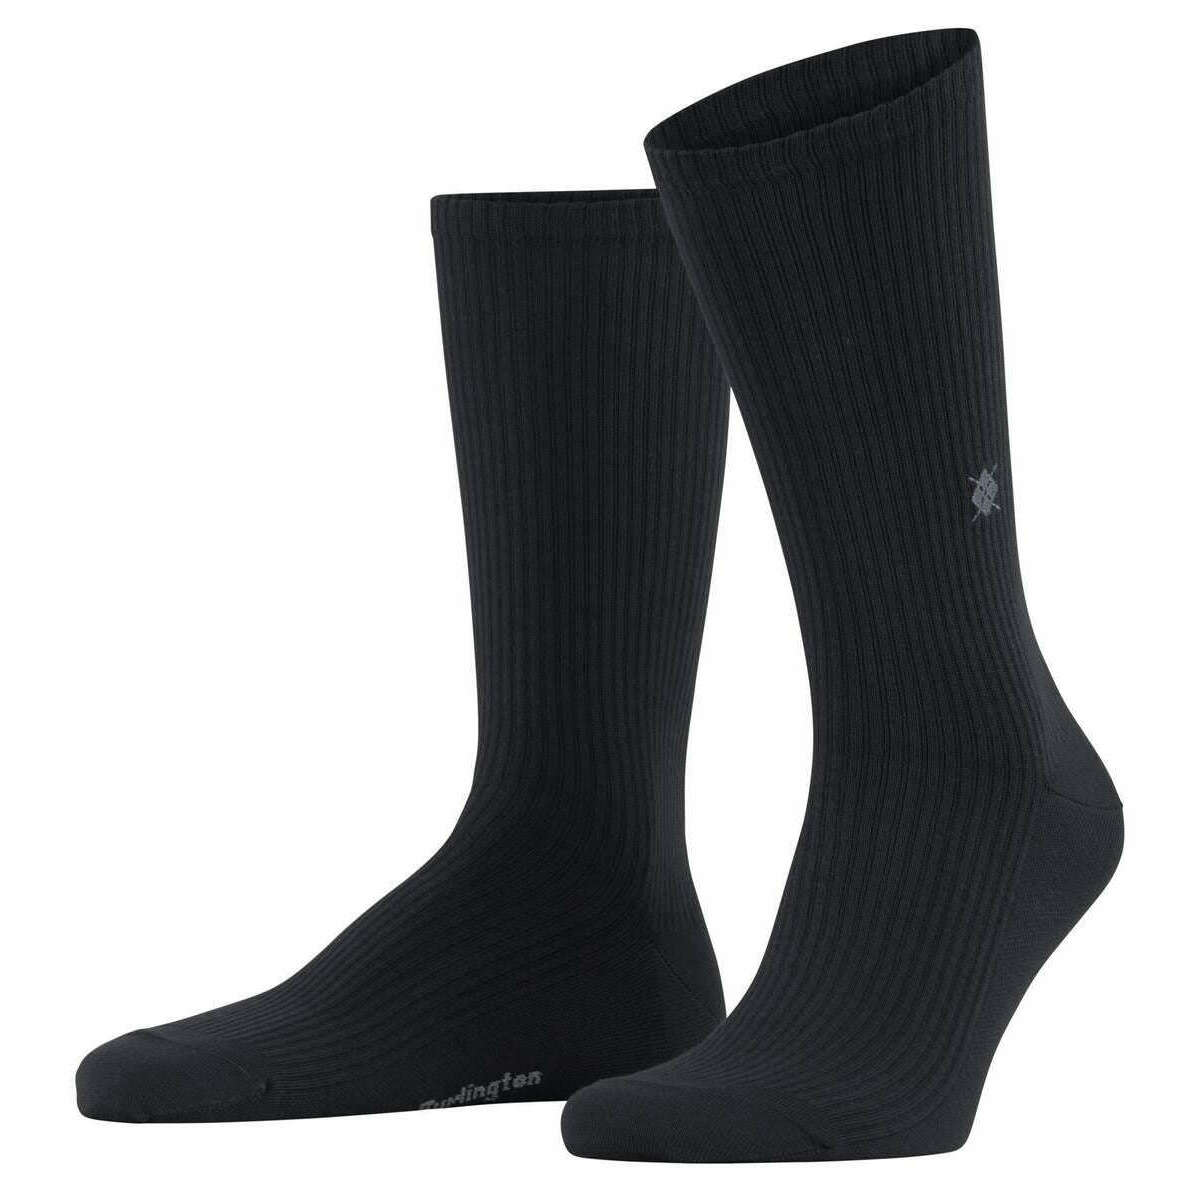 Burlington Boston Socks - Black